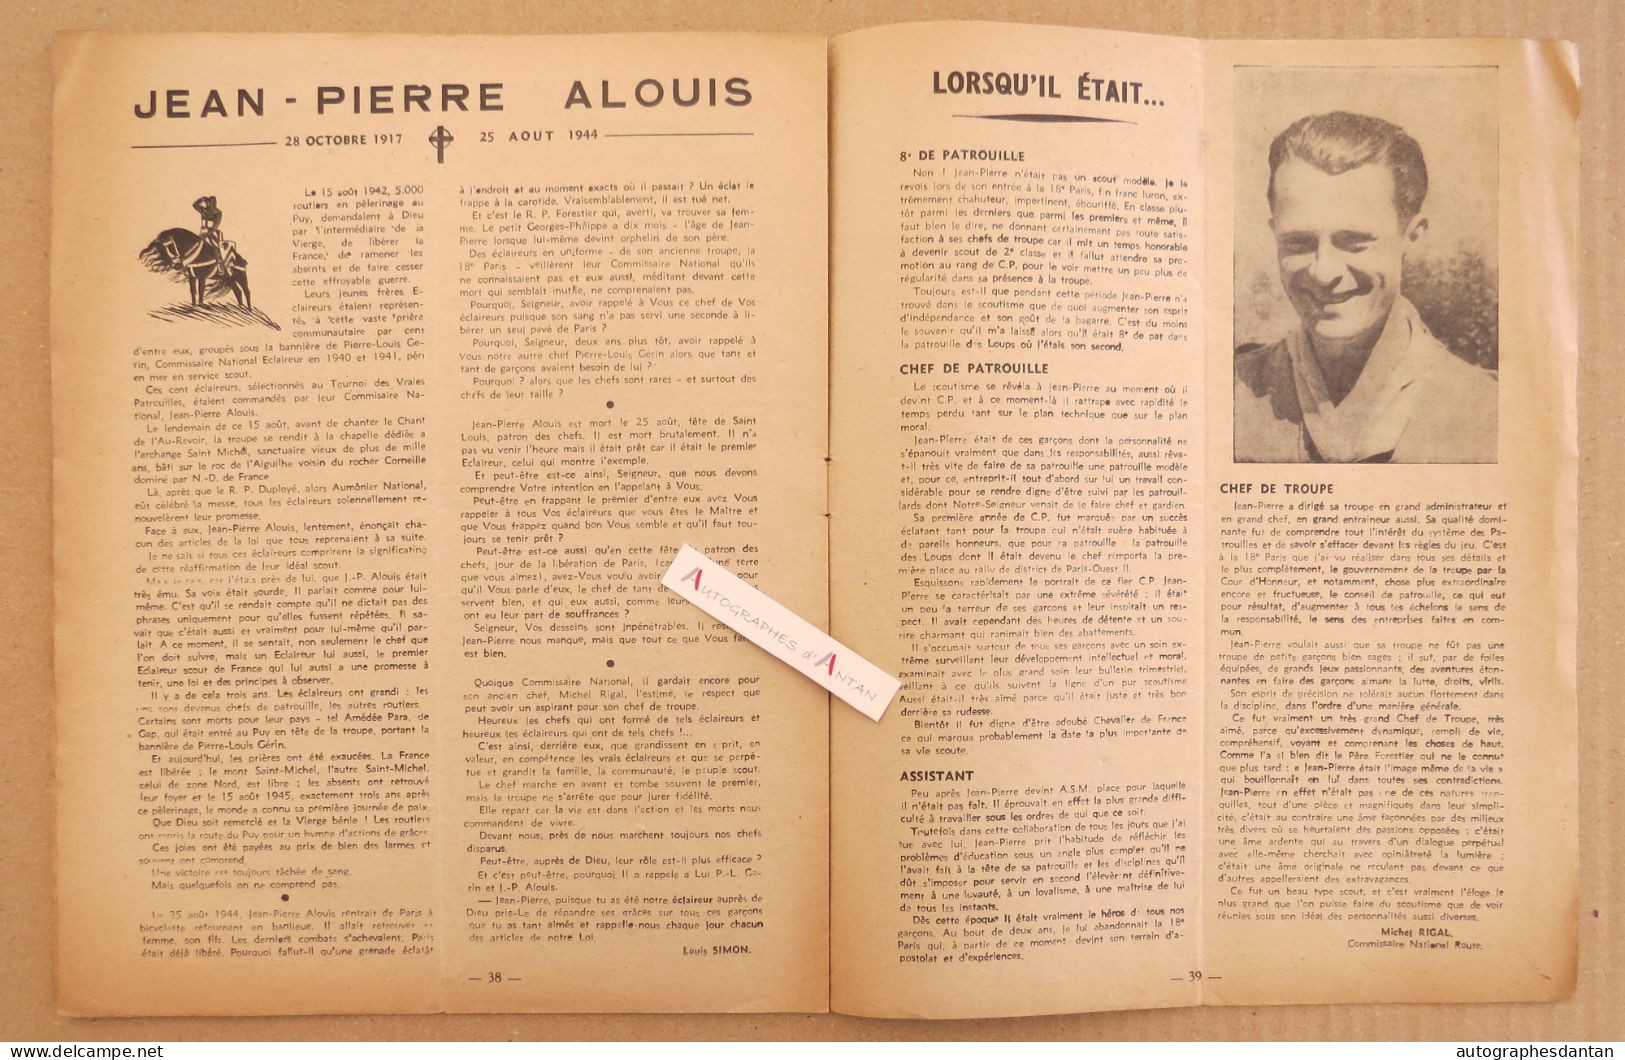 ● L'ESCOUTE 1945 - N°201 - La Patrouille Des Légendes (Dachs) - Jean Pierre Alouis - Cf Mes 6 Photos - Scoutisme - Autres & Non Classés